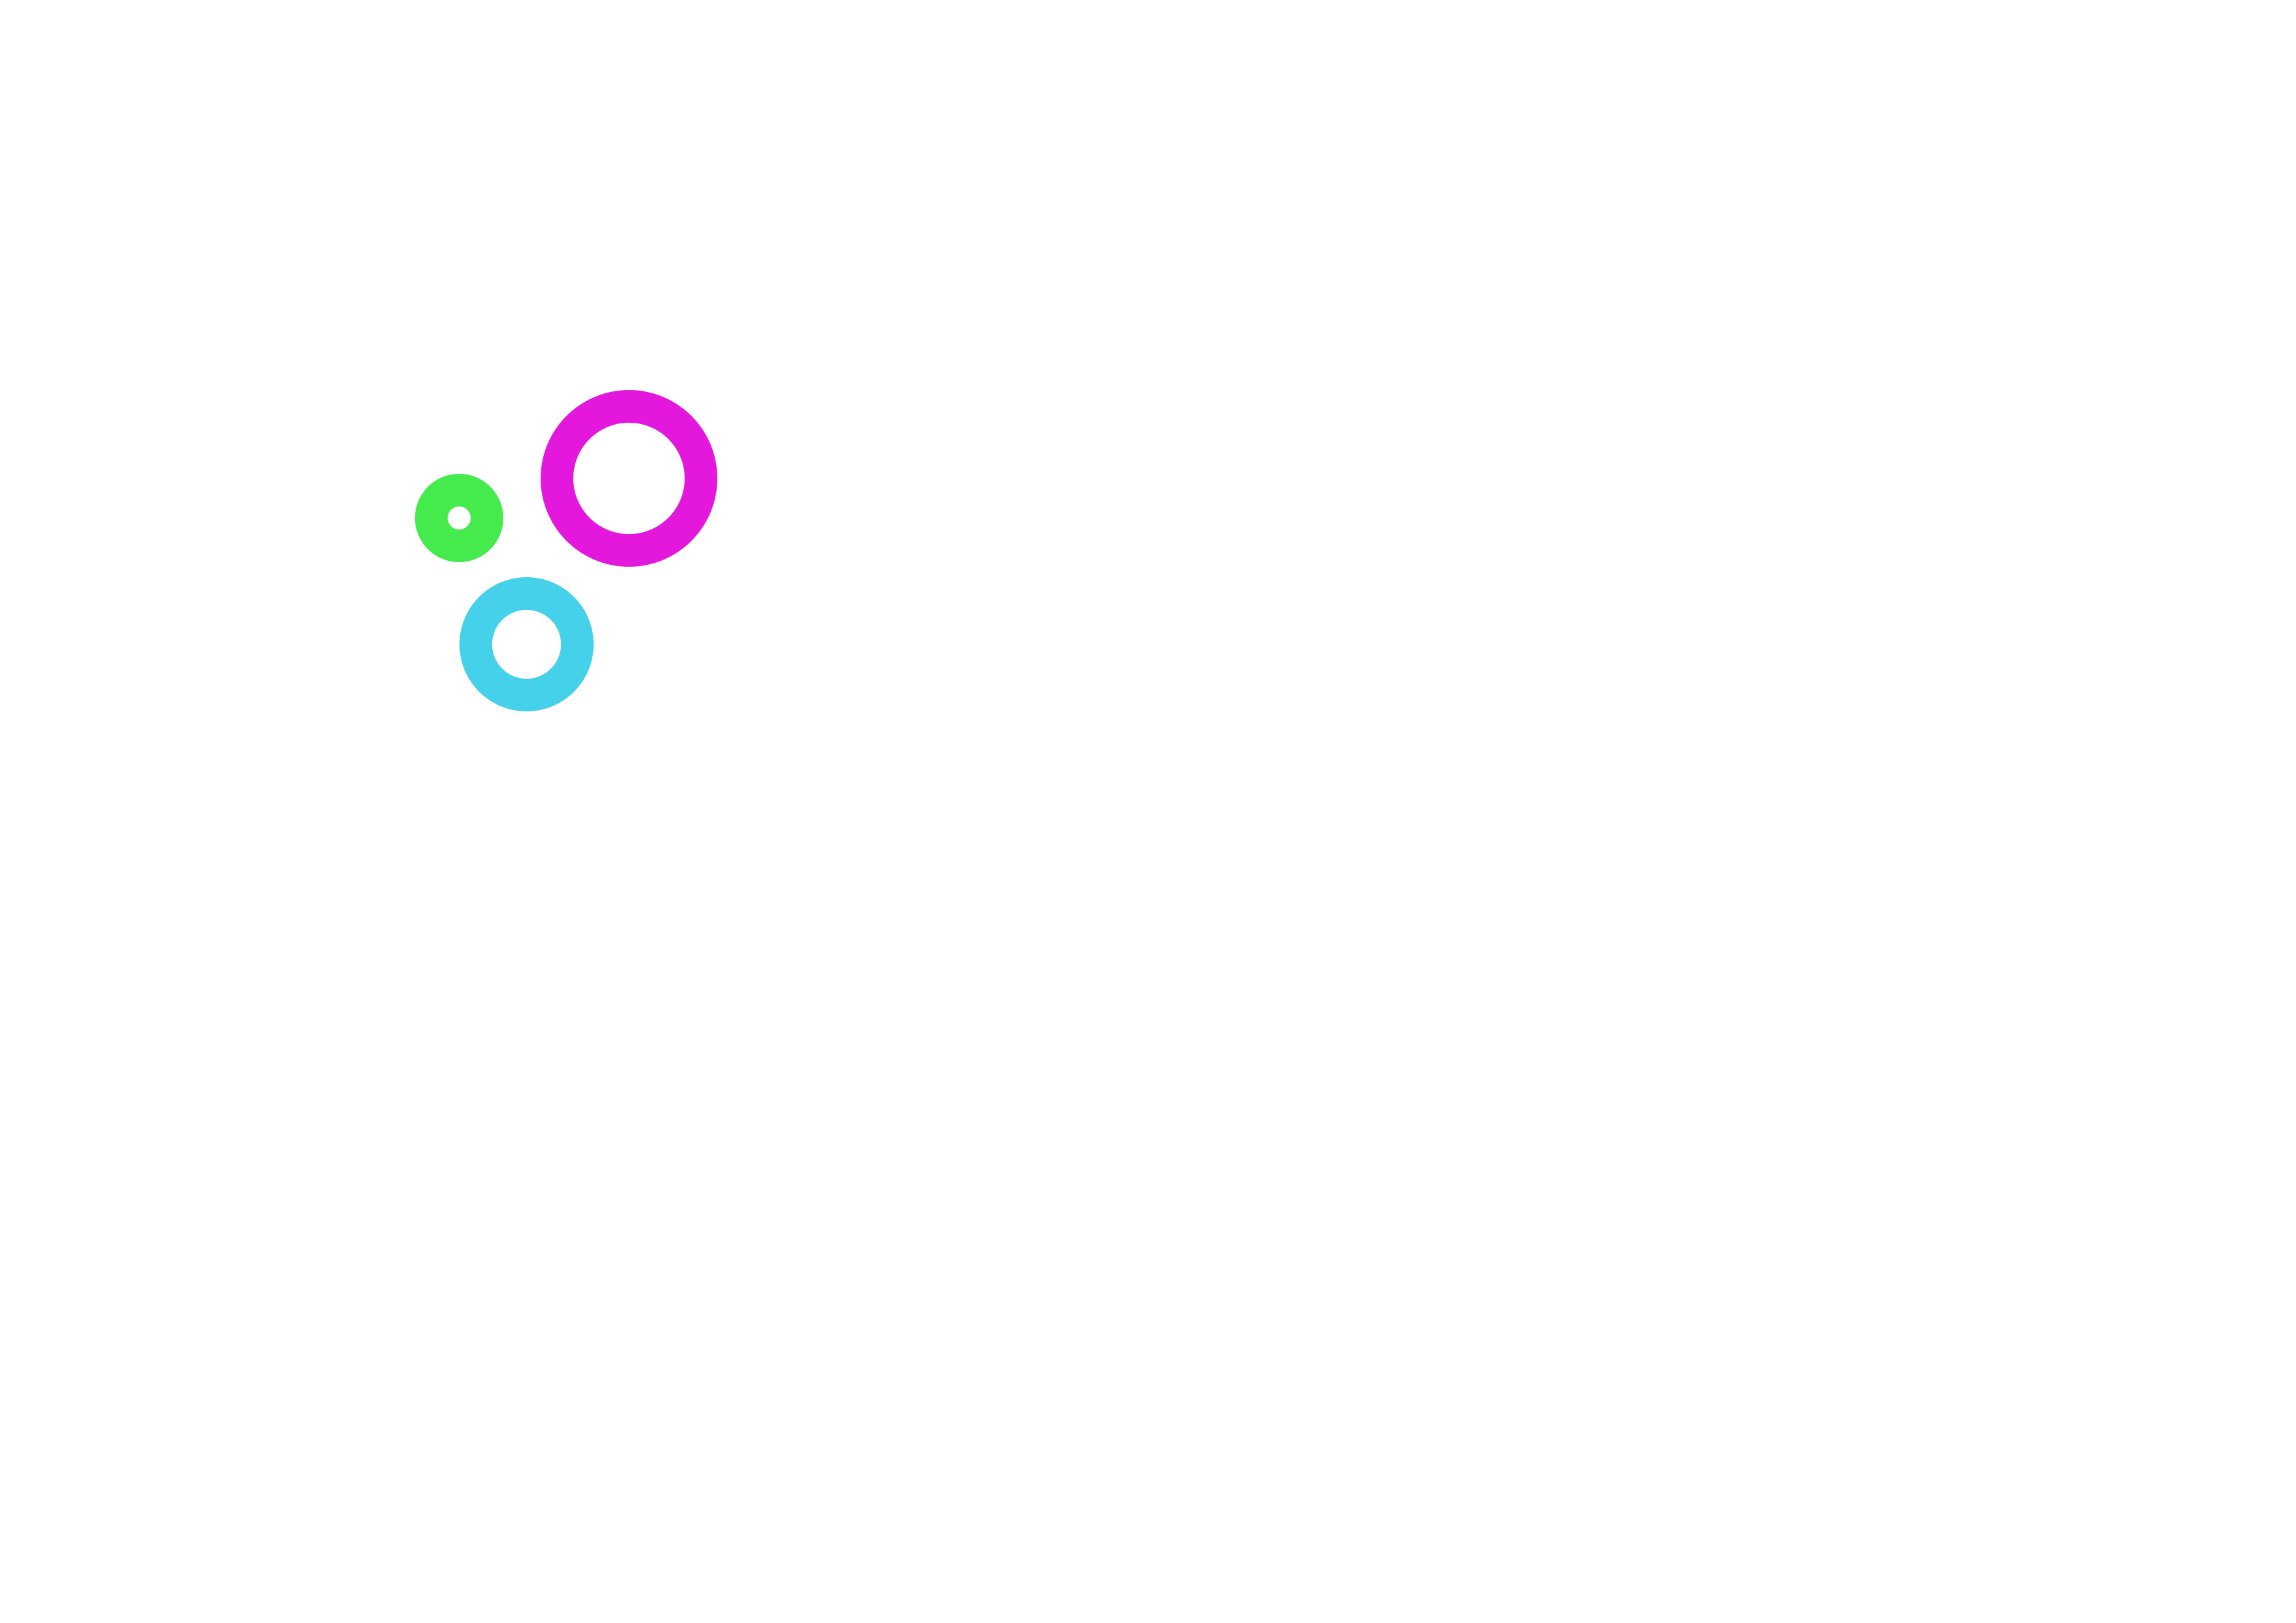 One telecom